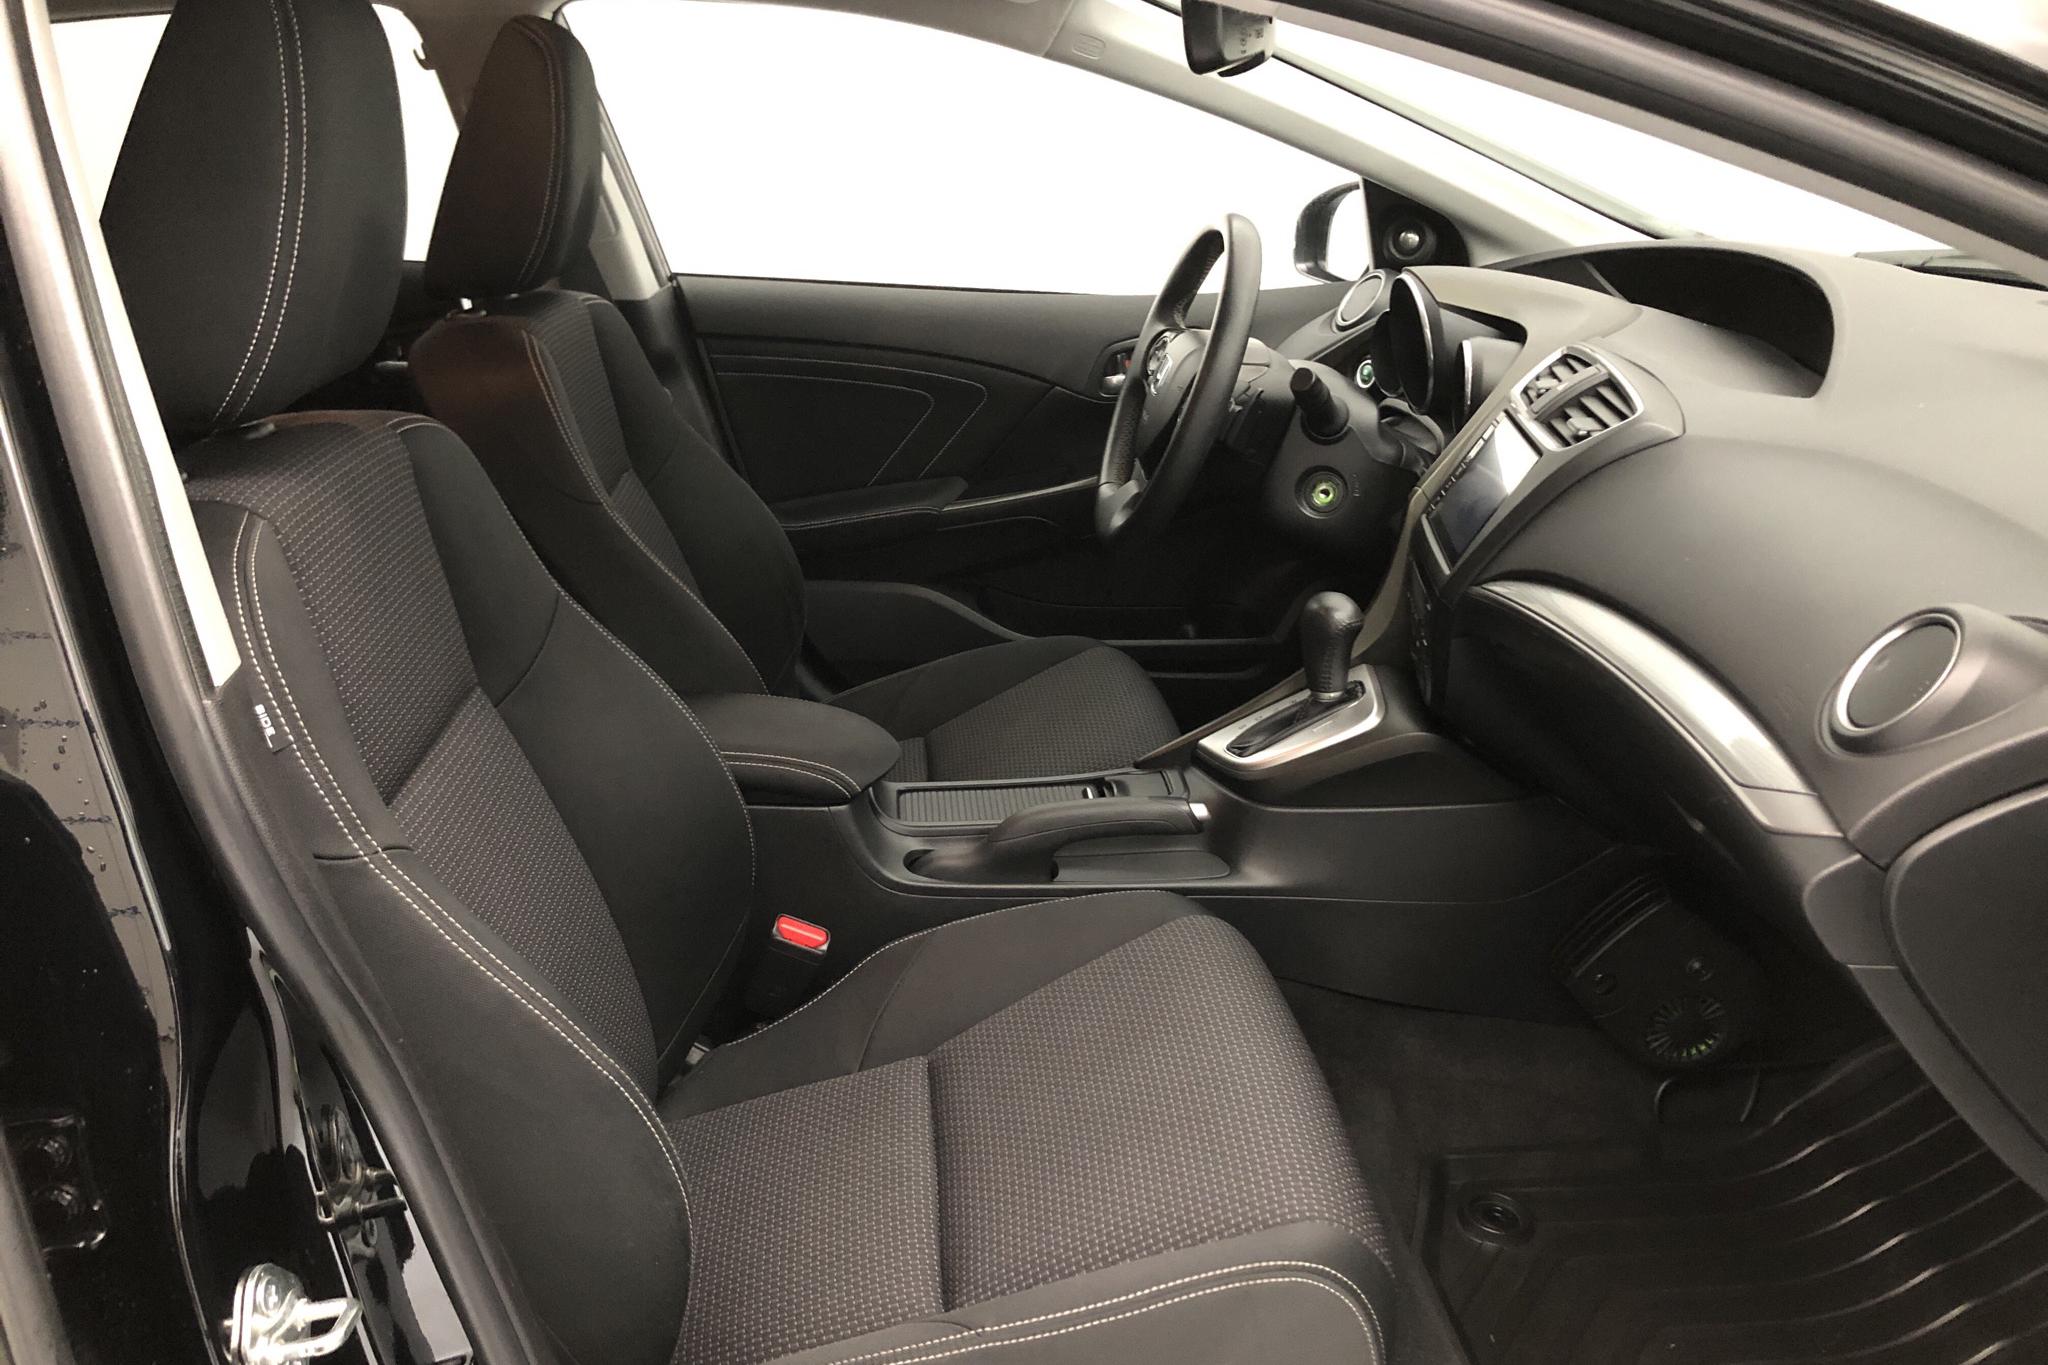 Honda Civic 1.8 i-VTEC Tourer (142hk) - 6 044 mil - Automat - svart - 2015